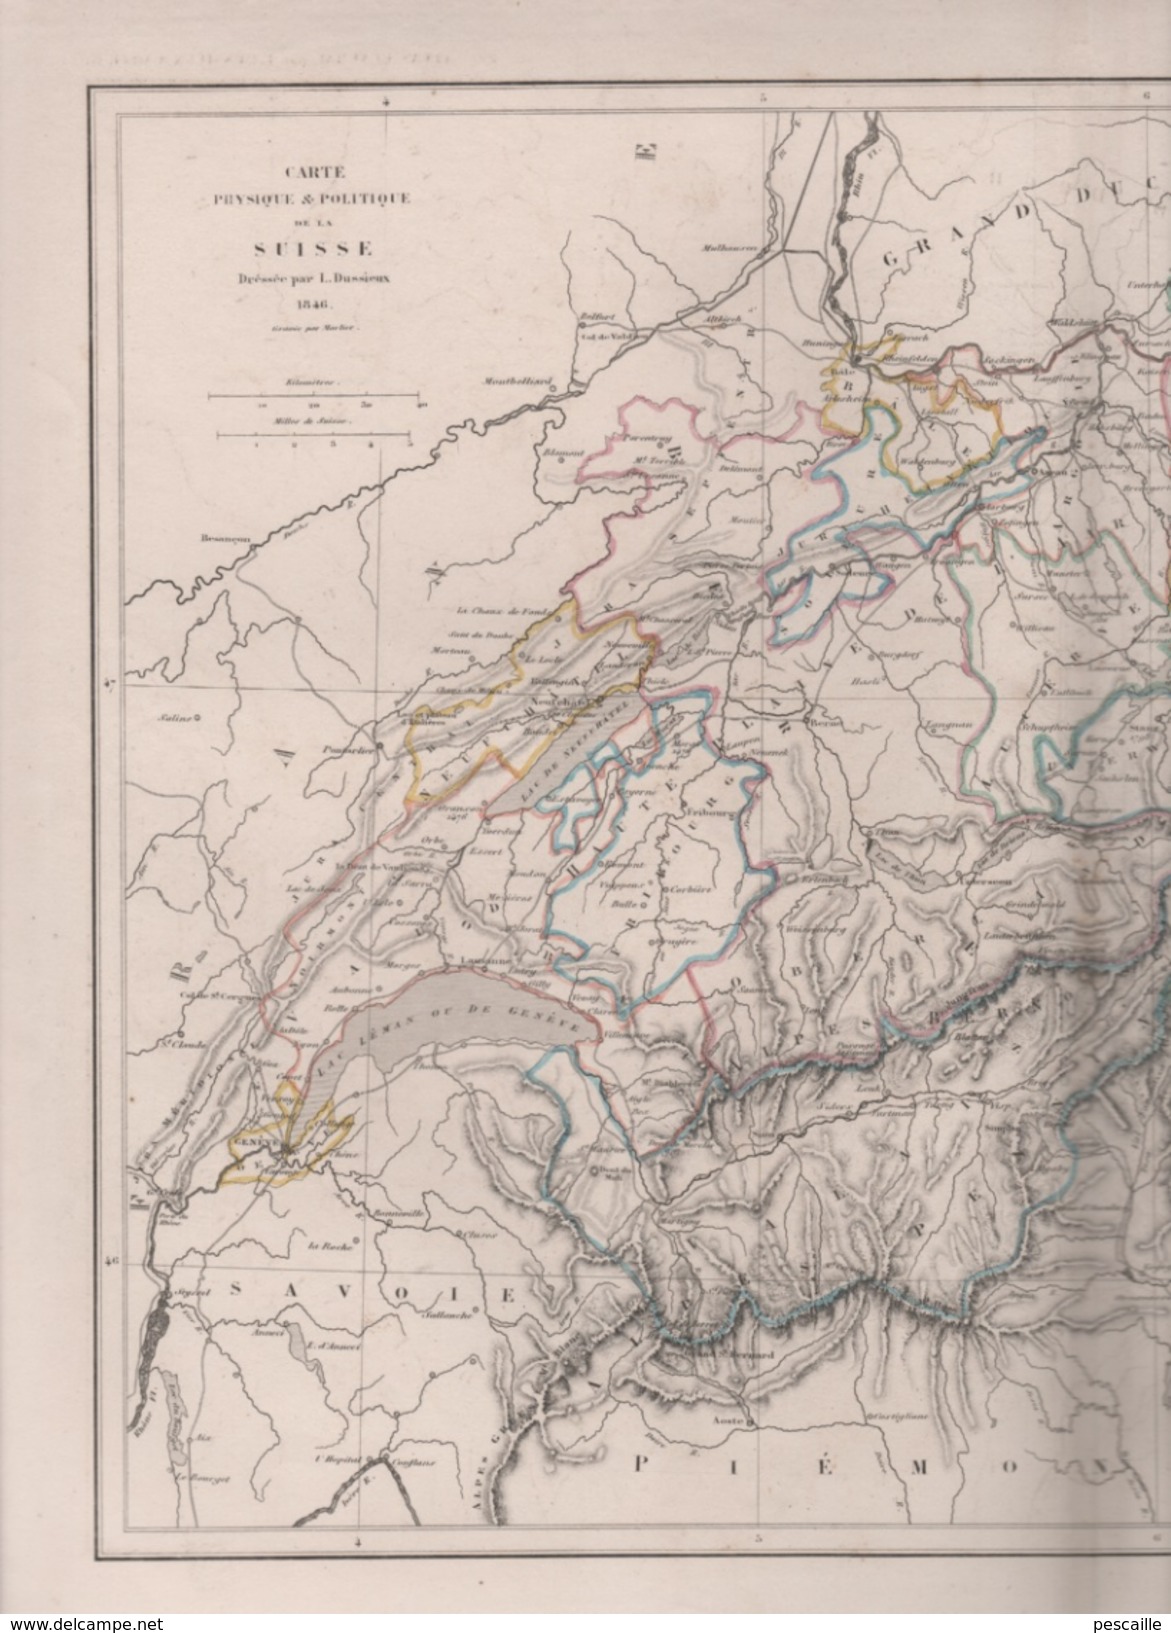 CARTE PHYSIQUE ET POLITIQUE DE LA SUISSE DRESSEE PAR L DUSSIEUX EN 1846 - Cartes Géographiques